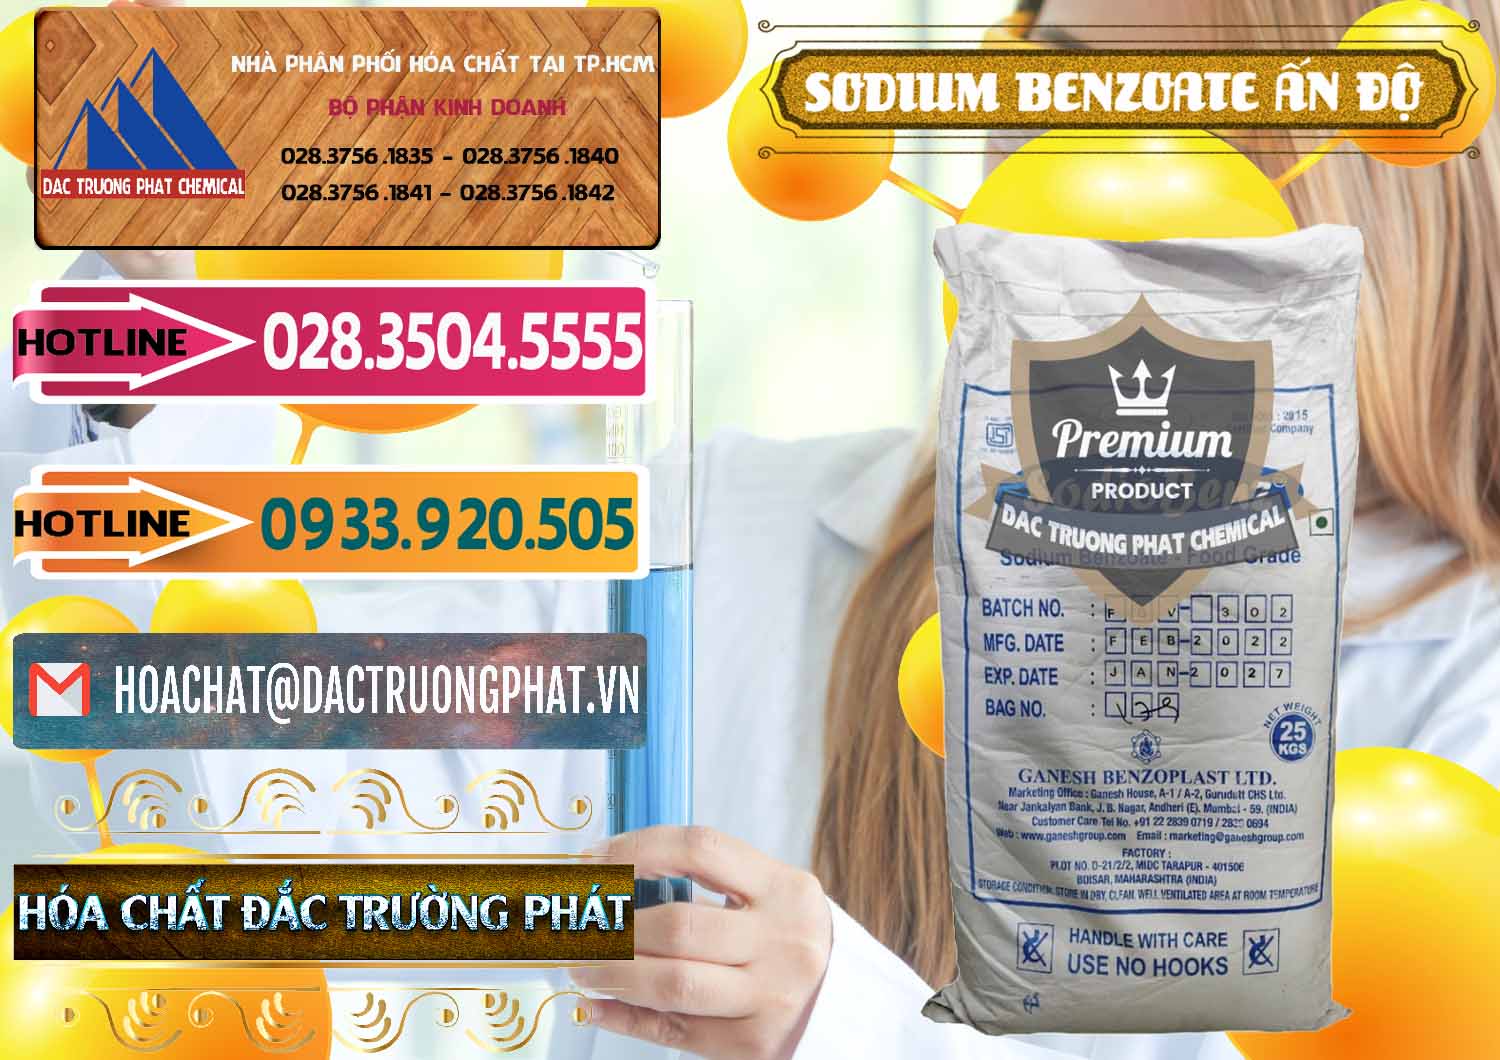 Nơi chuyên phân phối & bán Sodium Benzoate - Mốc Bột Ấn Độ India - 0361 - Nơi bán - phân phối hóa chất tại TP.HCM - dactruongphat.vn